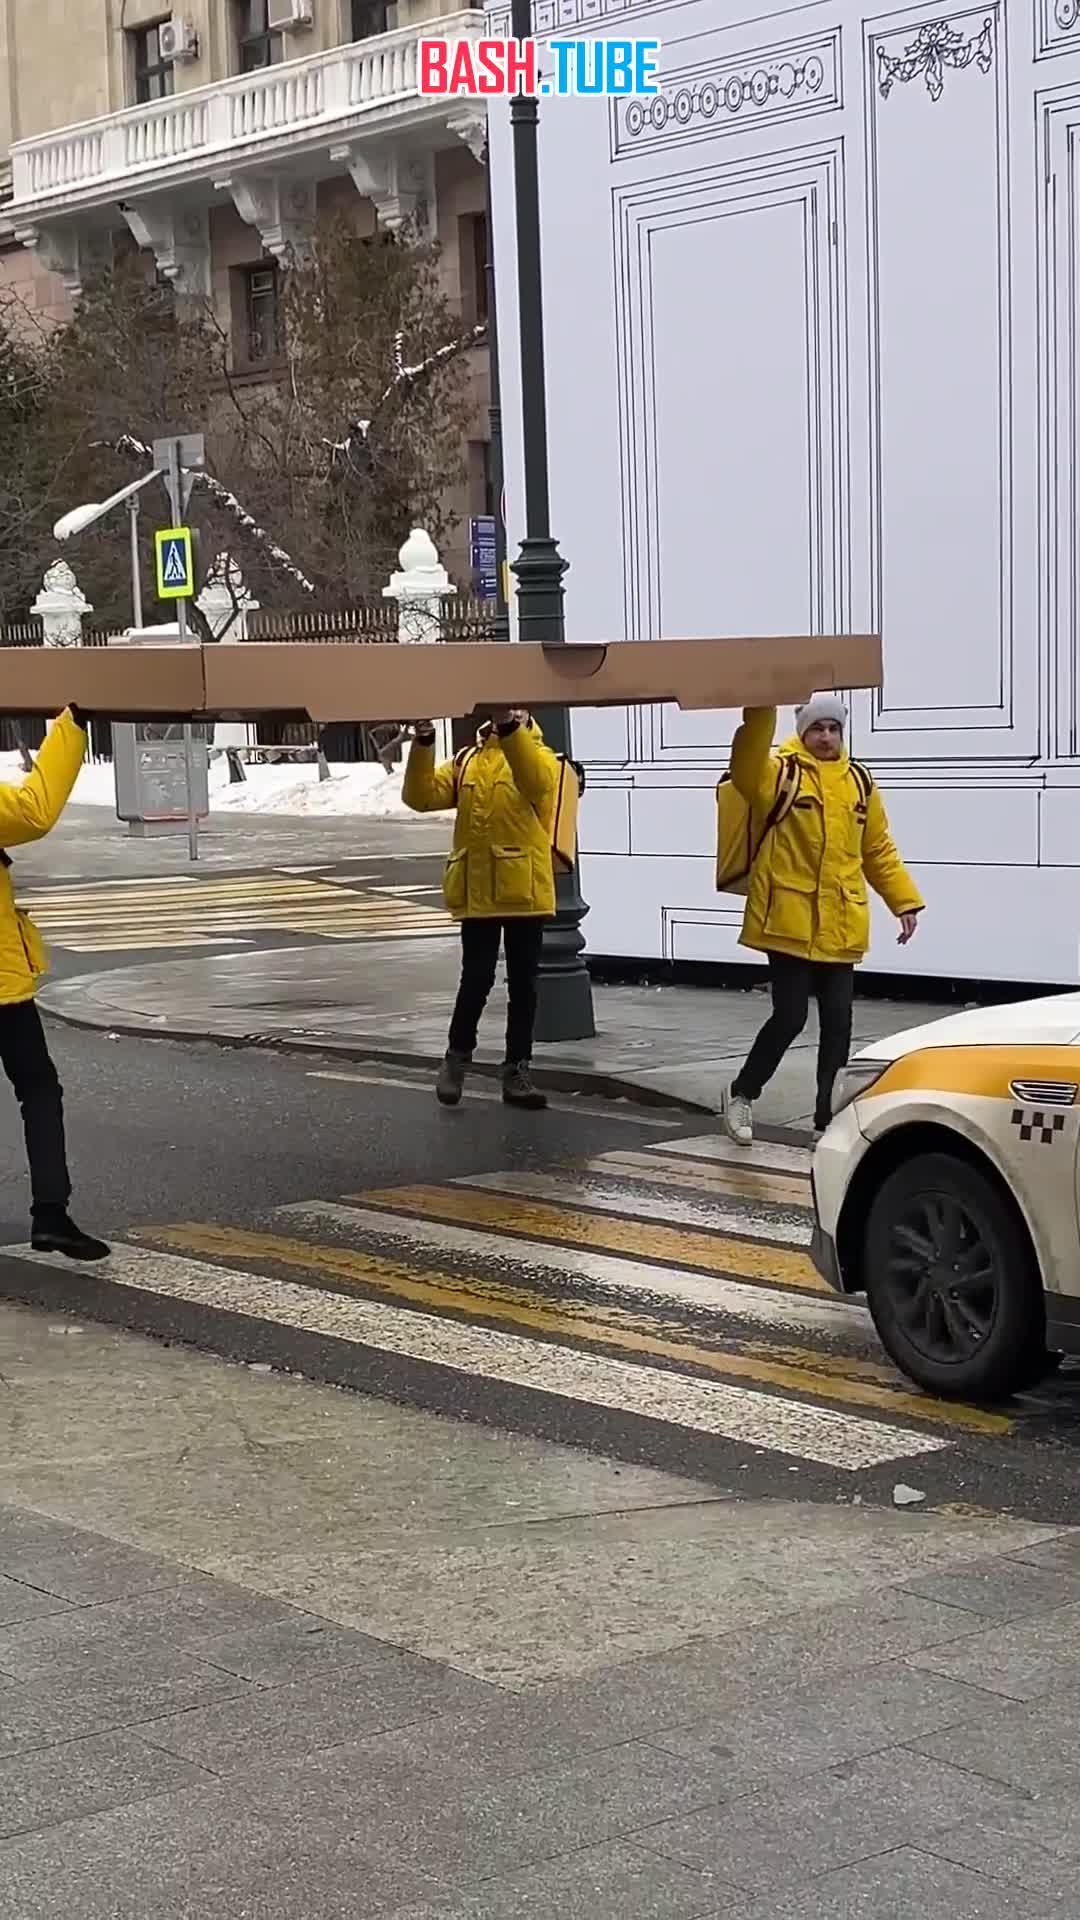  Курьеры в Москве доставили гигантскую пиццу размером не менее 4 метров